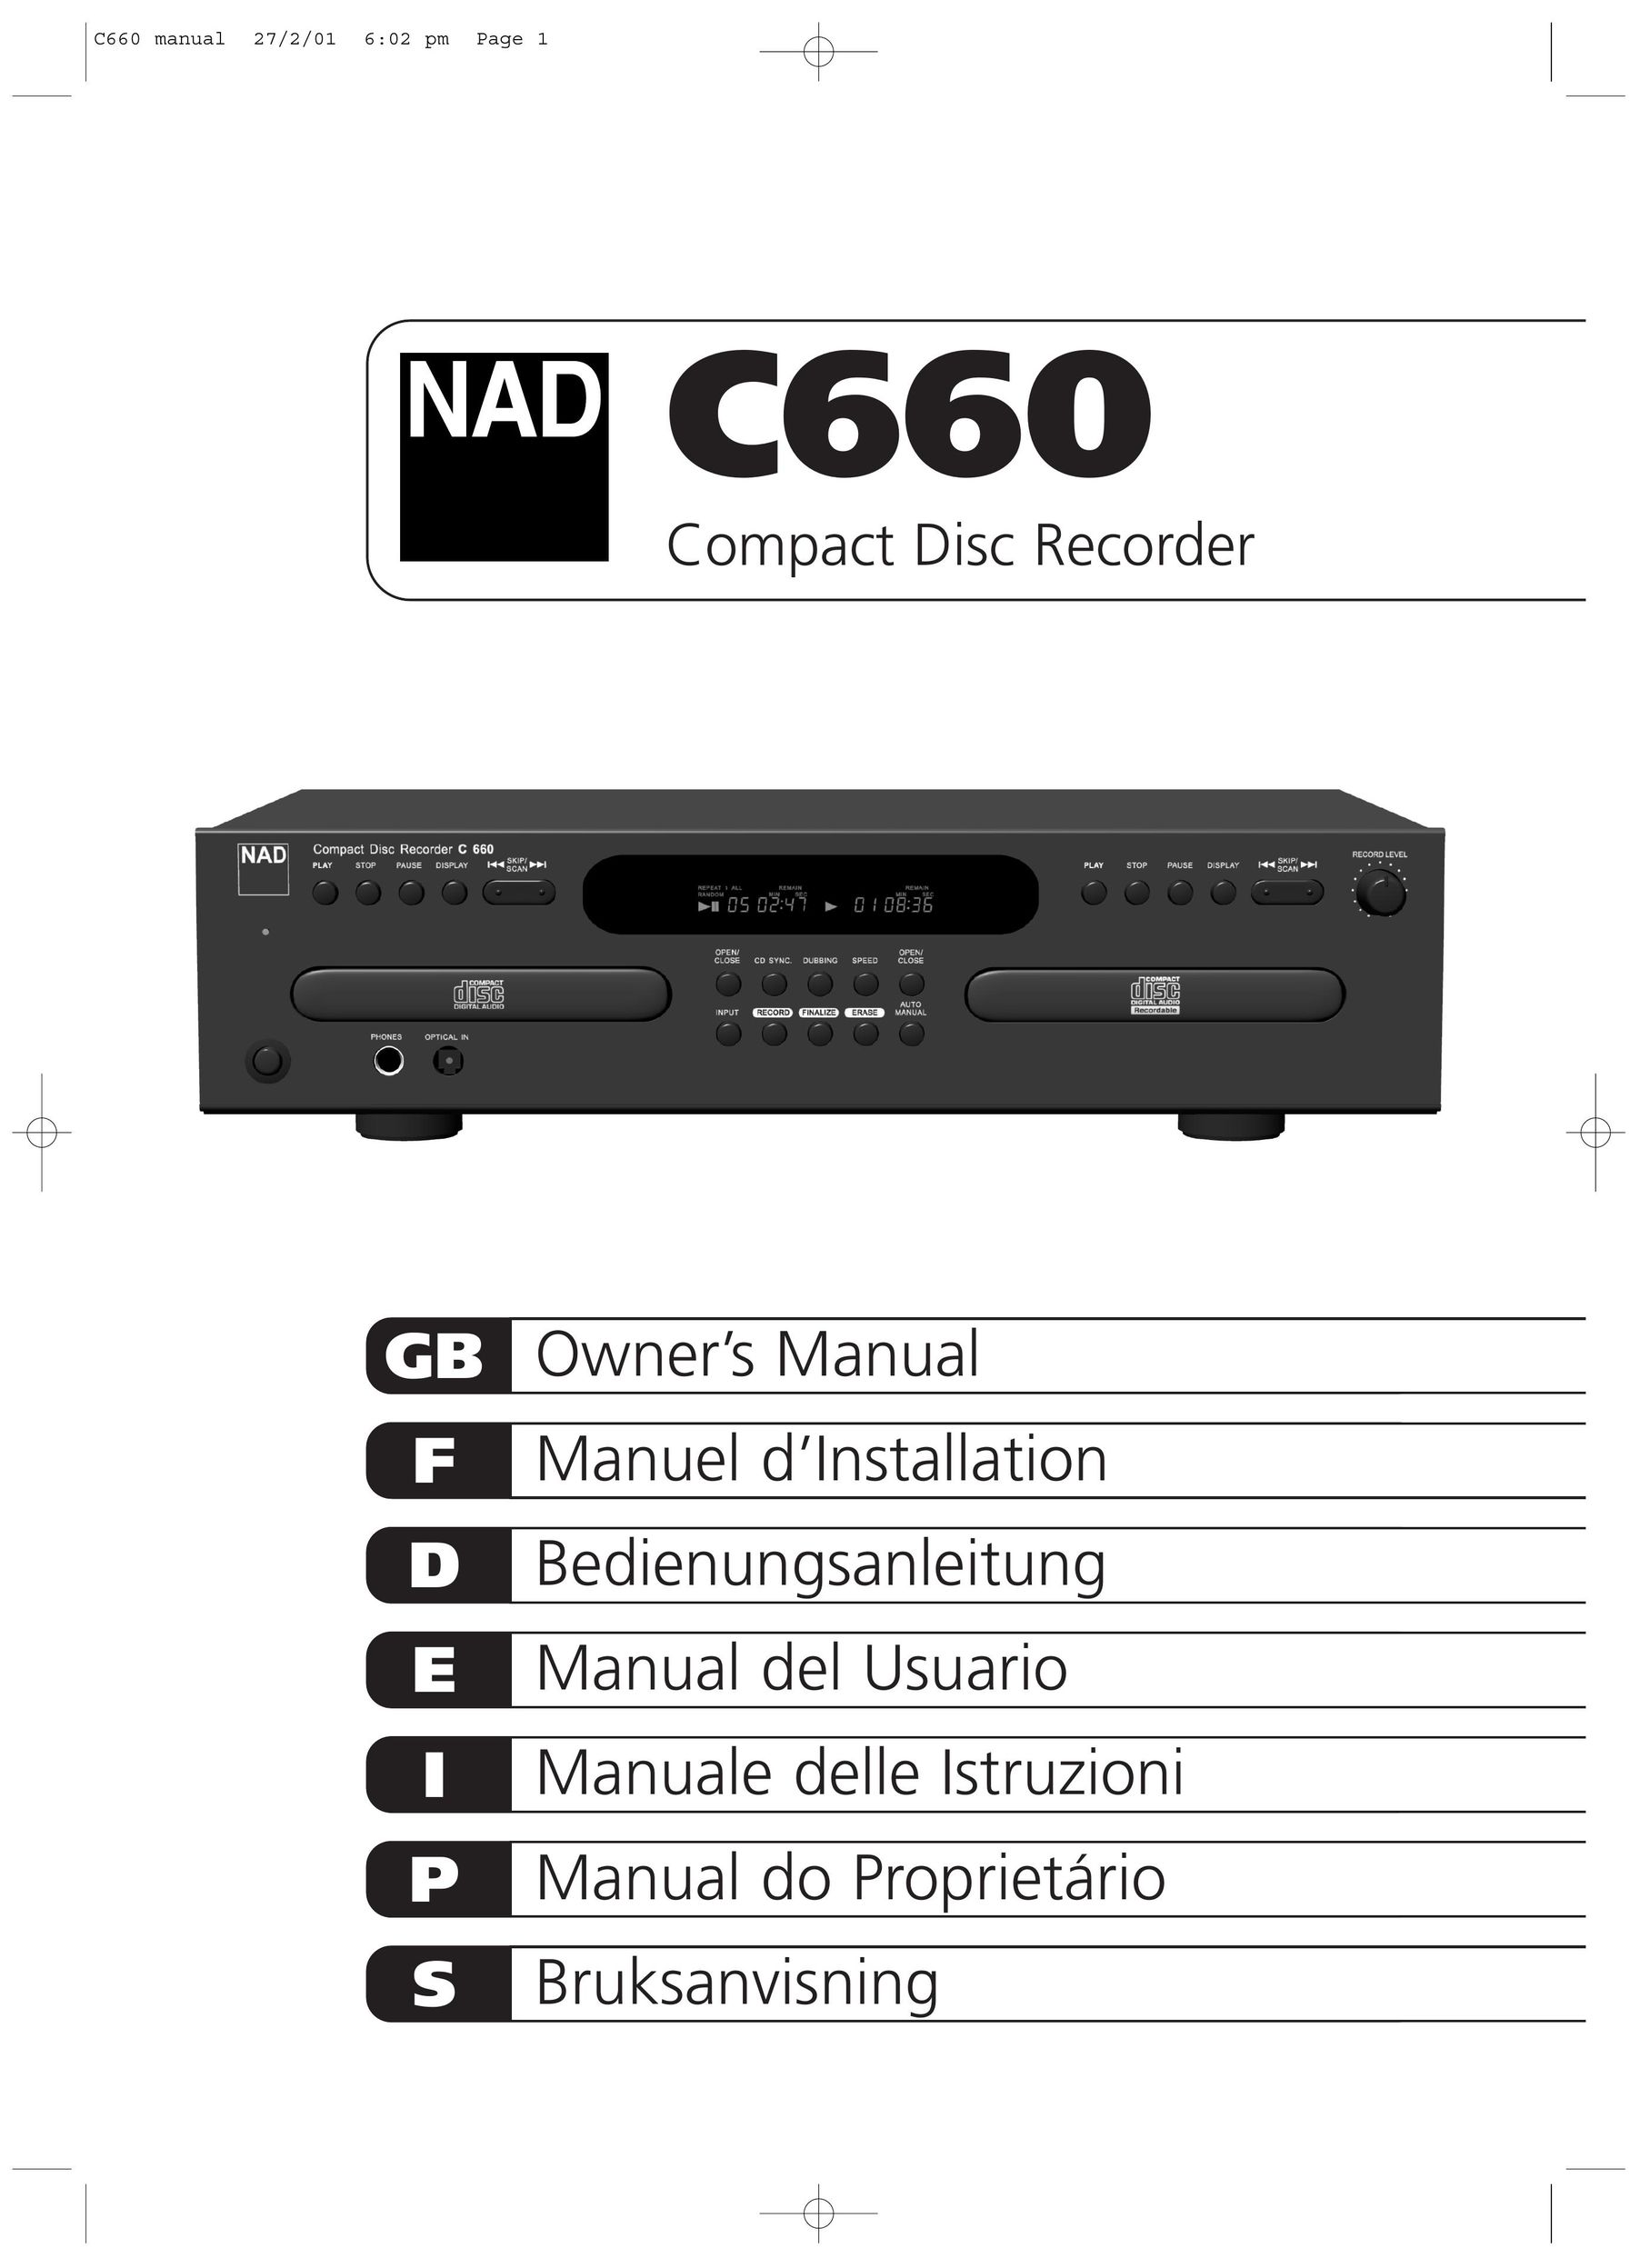 NAD C660 CD Player User Manual